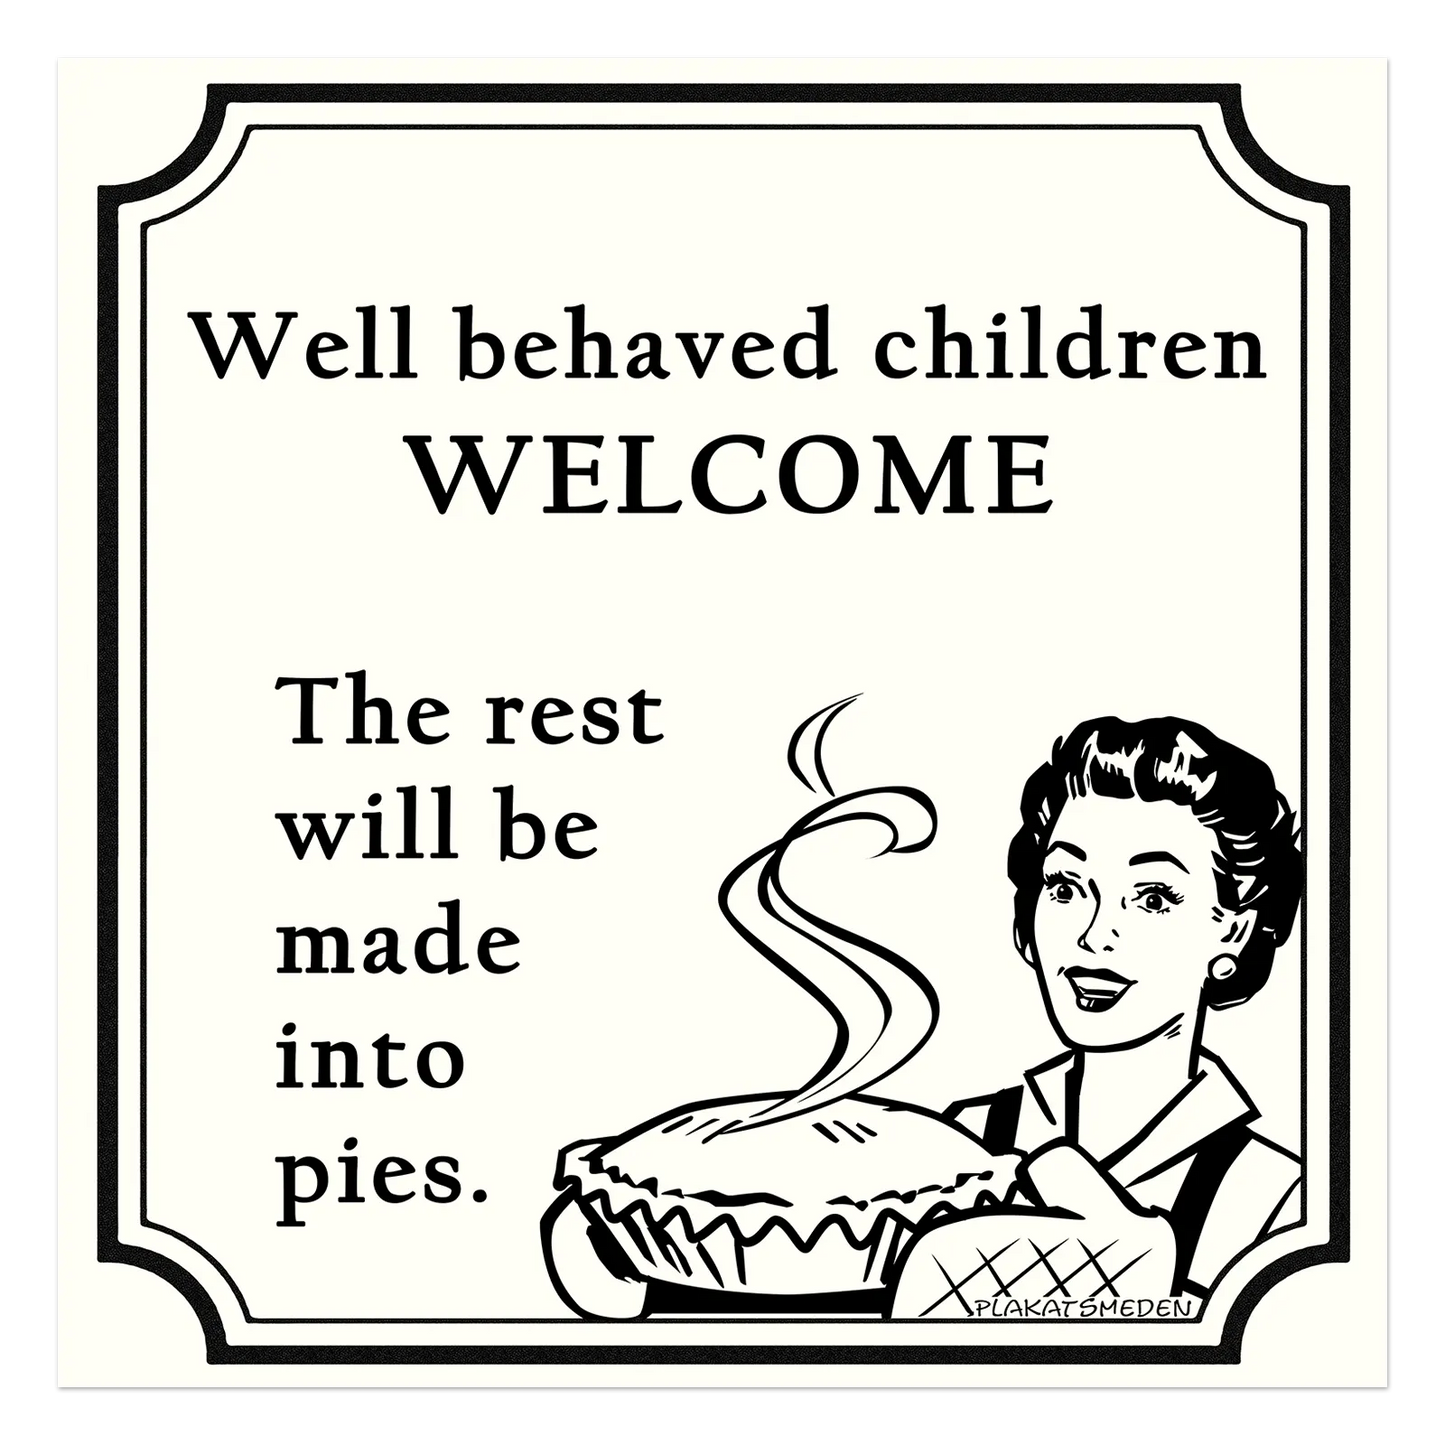 Velopdragne børn er velkomne. Resten bliver lavet om til tærte.